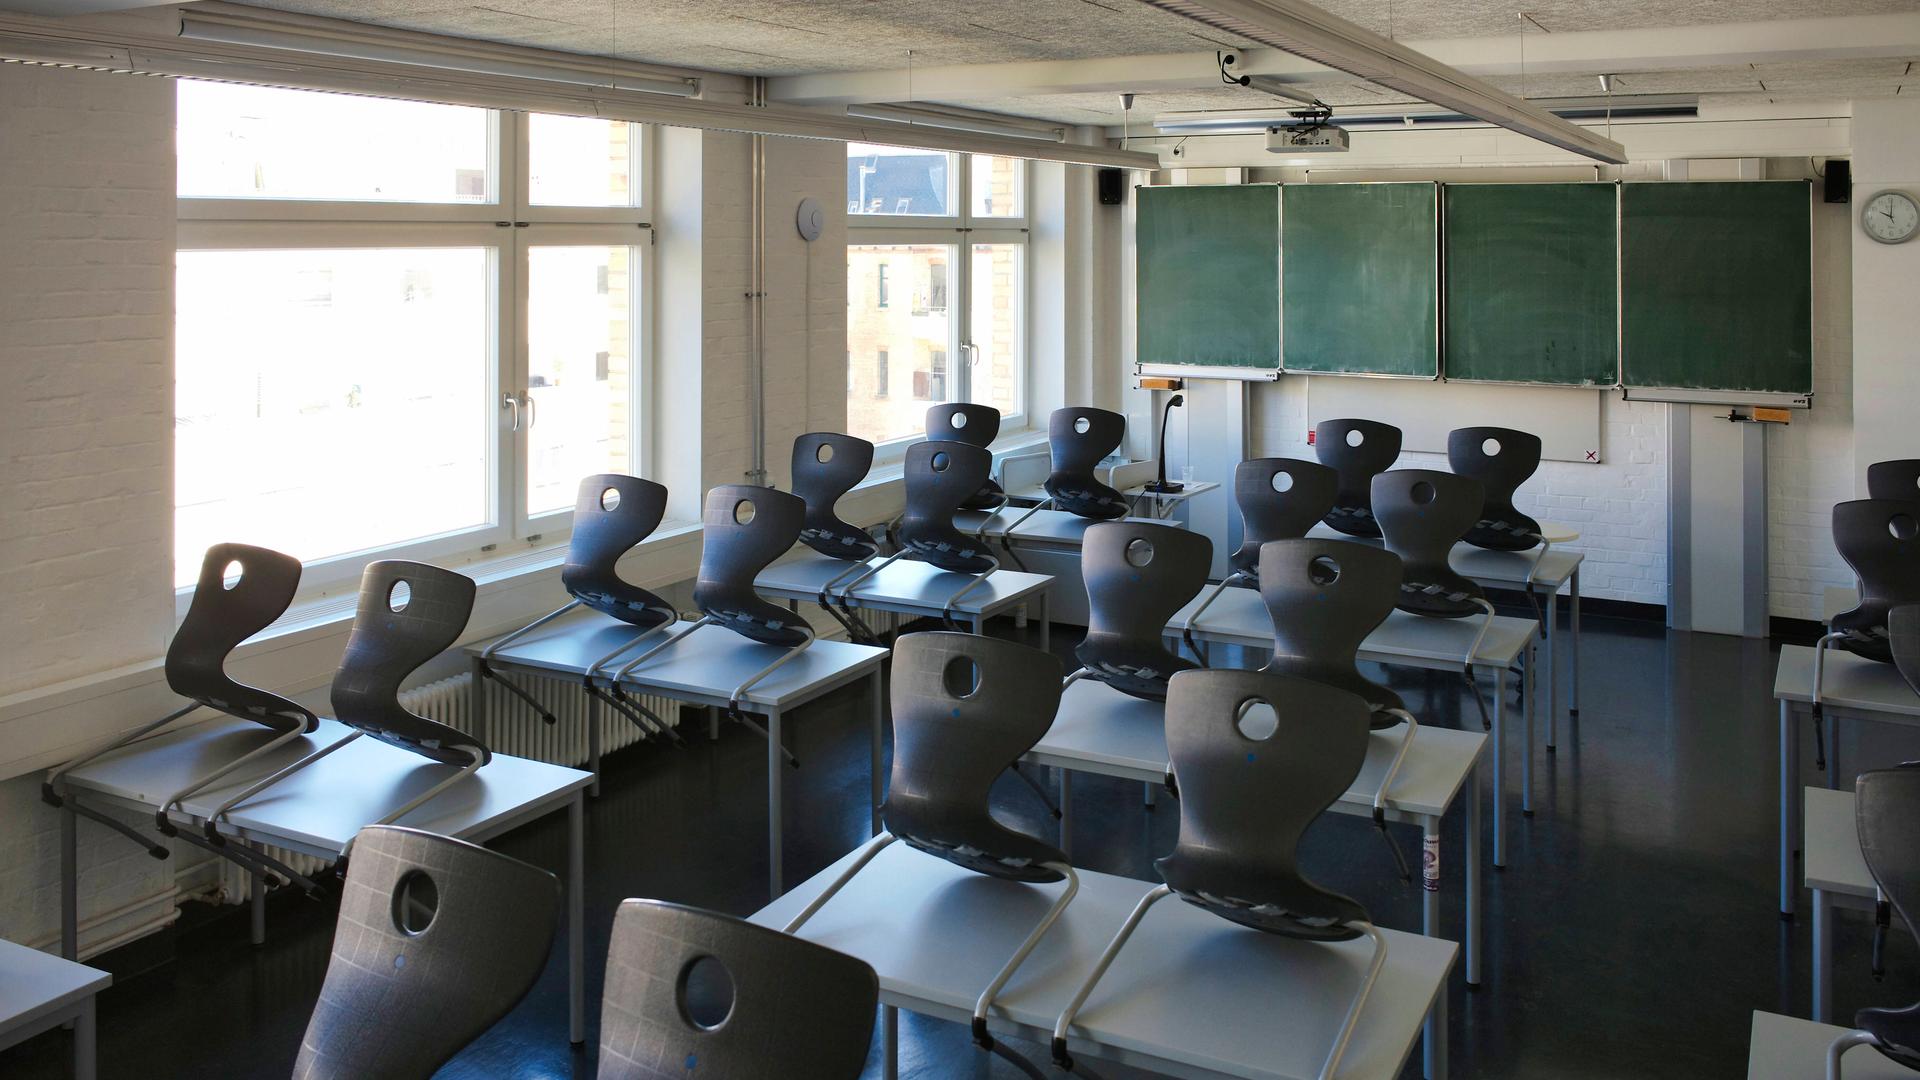 Blick in ein leeres Klassenzimmer mit alter Tafel und hochgestellten Stühlen.